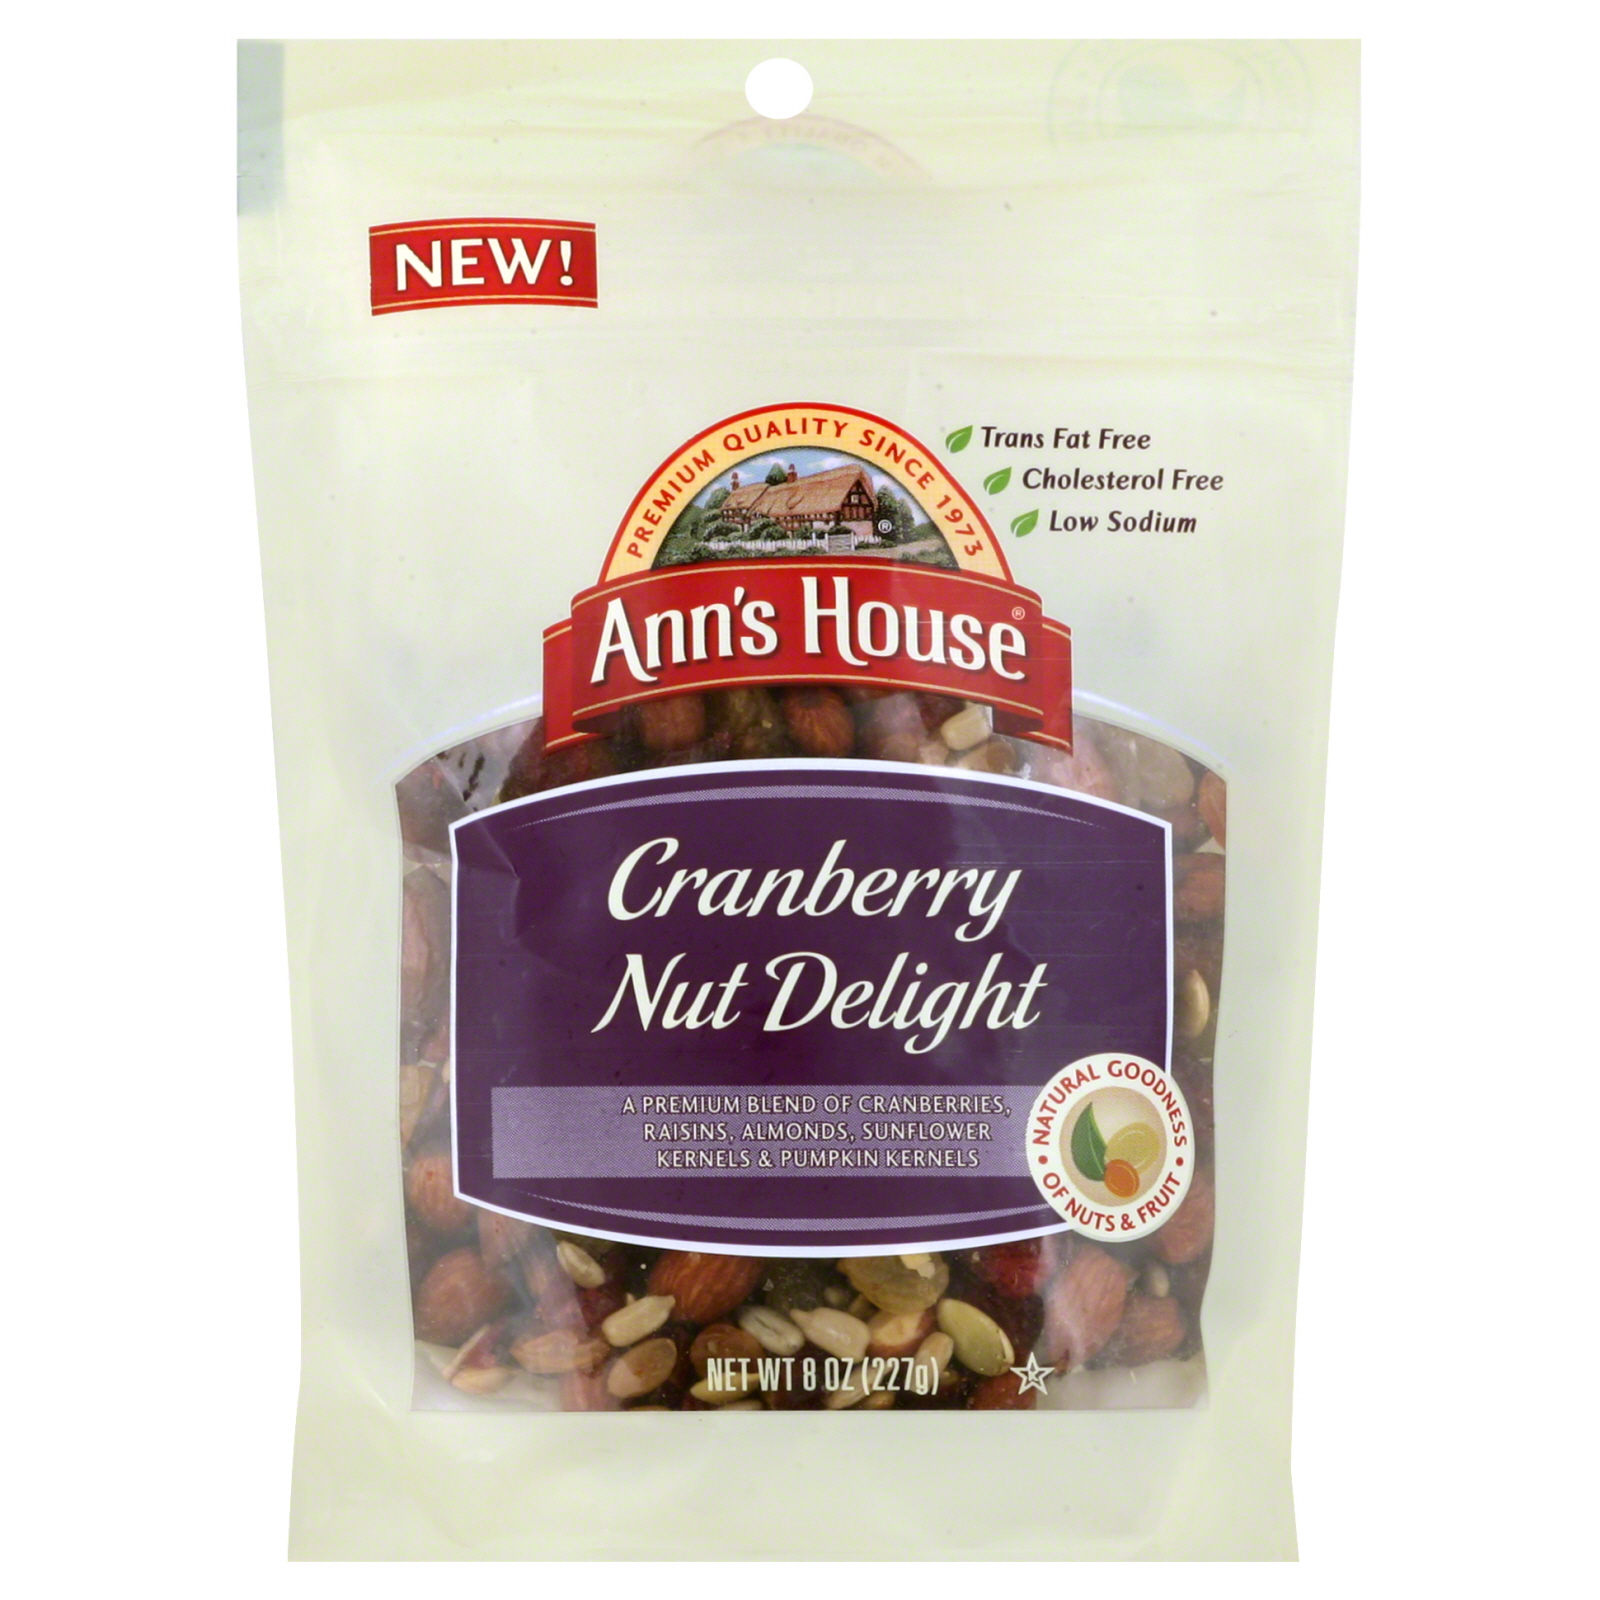 Ann's House Cranberry Nut Delight - 8 oz (227 g)